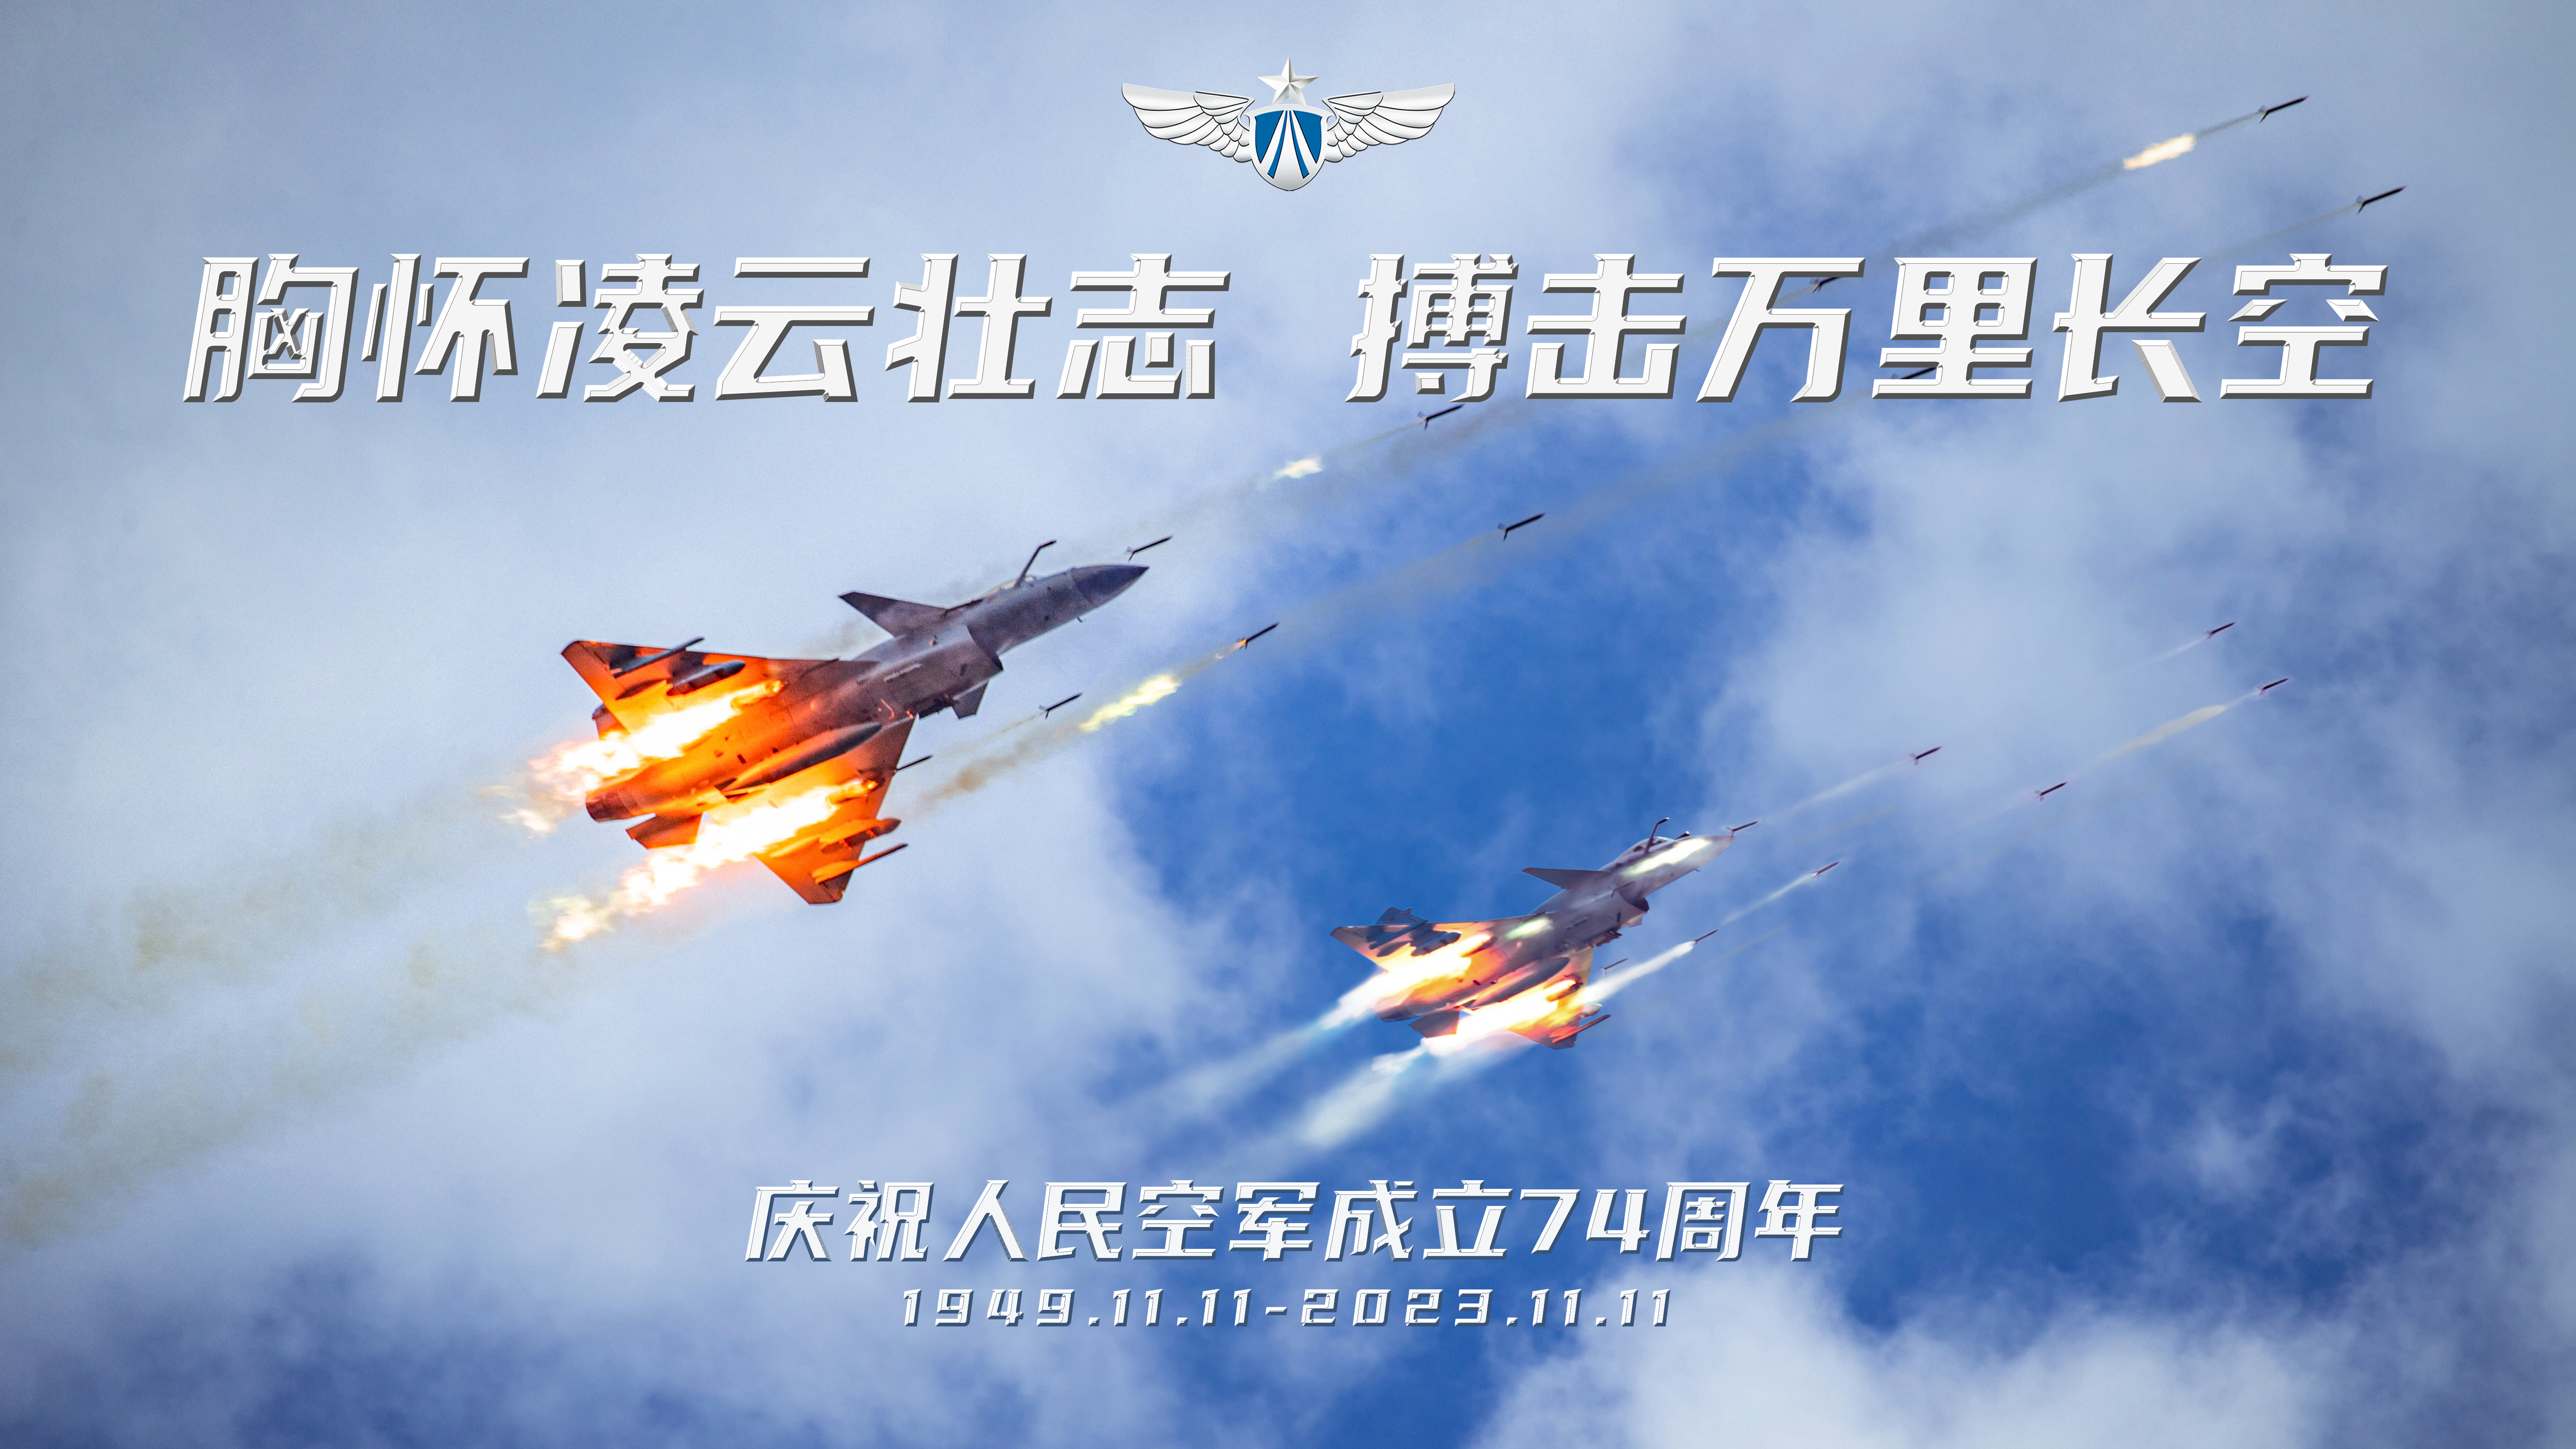 庆祝人民空军成立74周年主题海报 (4).jpg